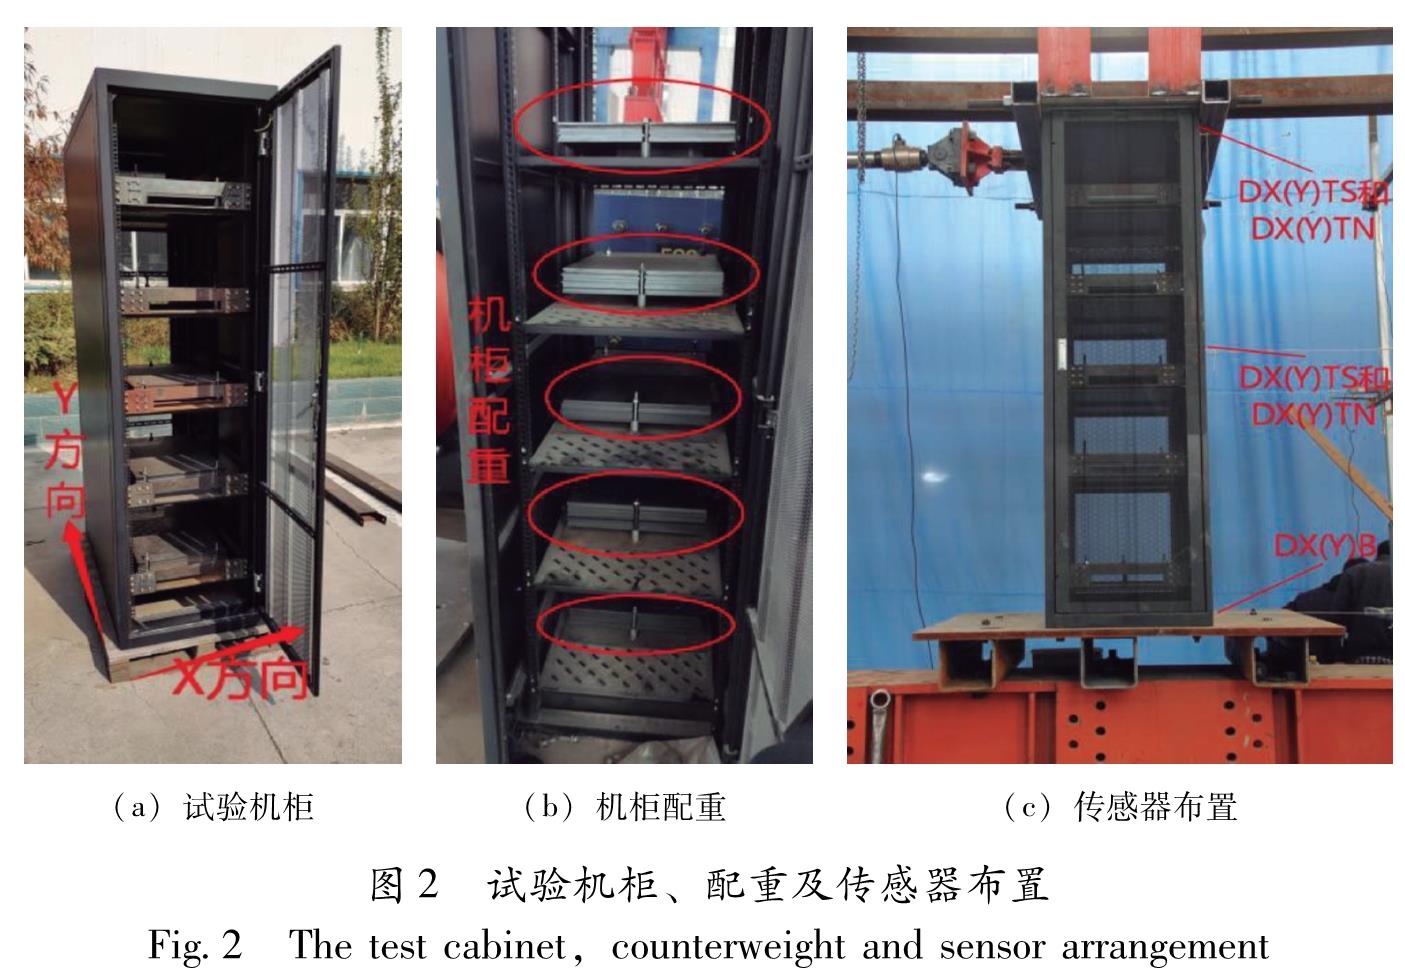 图2 试验机柜、配重及传感器布置<br/>Fig.2 The test cabinet,counterweight and sensor arrangement